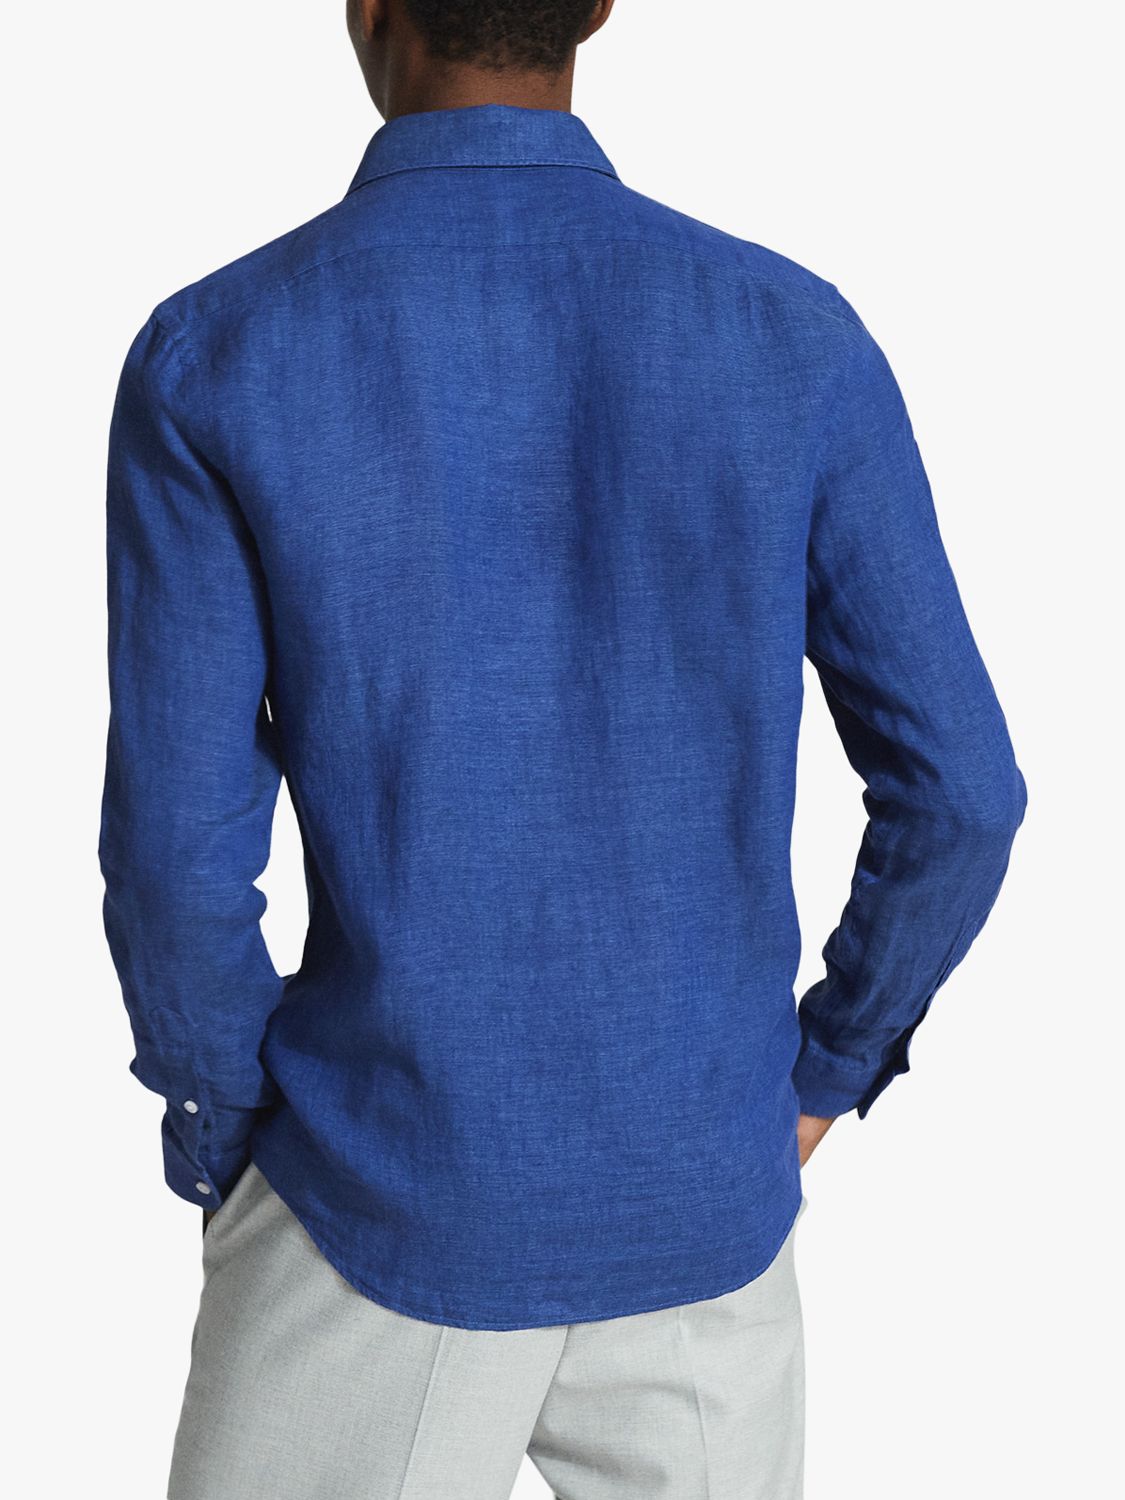 Reiss Ruban Linen Regular Fit Shirt, Bright Blue at John Lewis & Partners